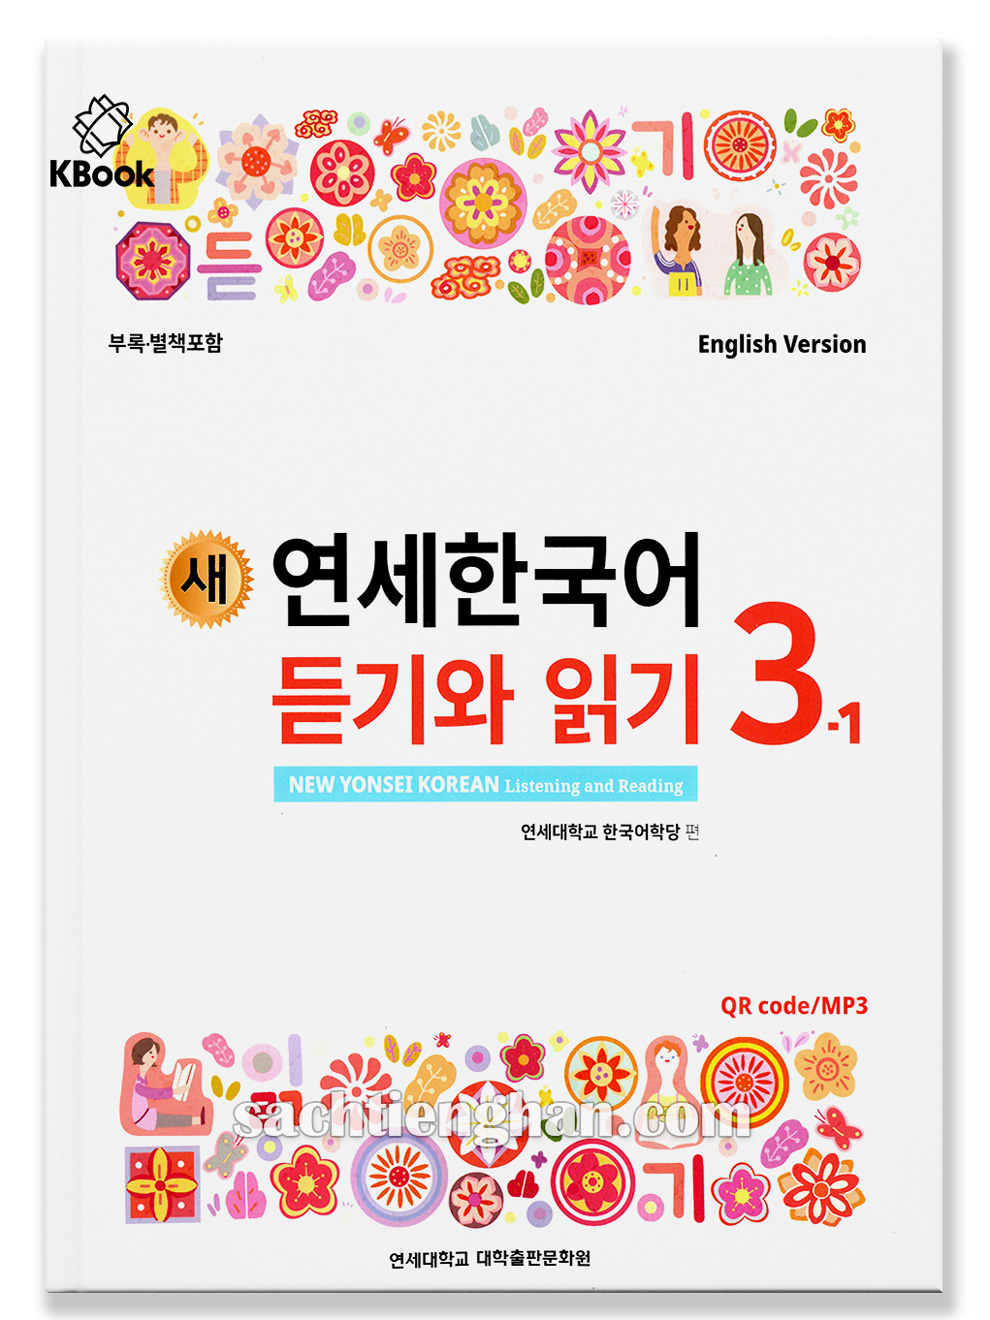 [BẢN MÀU XỊN] Giáo trình Tiếng Hàn New Yonsei Korean Nghe & Đọc 3-1 - 새 연세한국어 듣기와 읽기 3-1